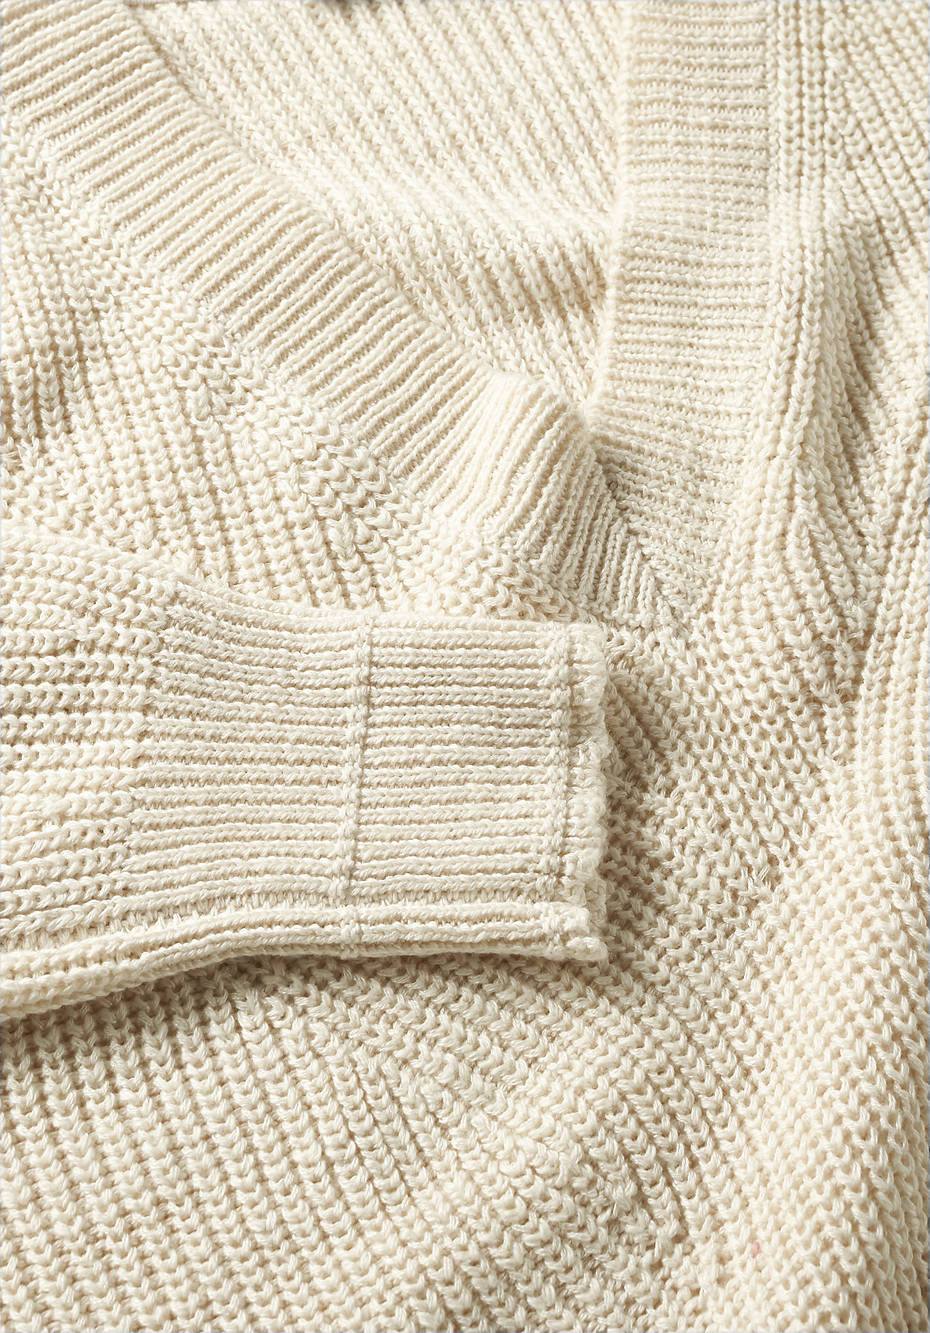 Pullover aus Leinen mit Bio-Baumwolle